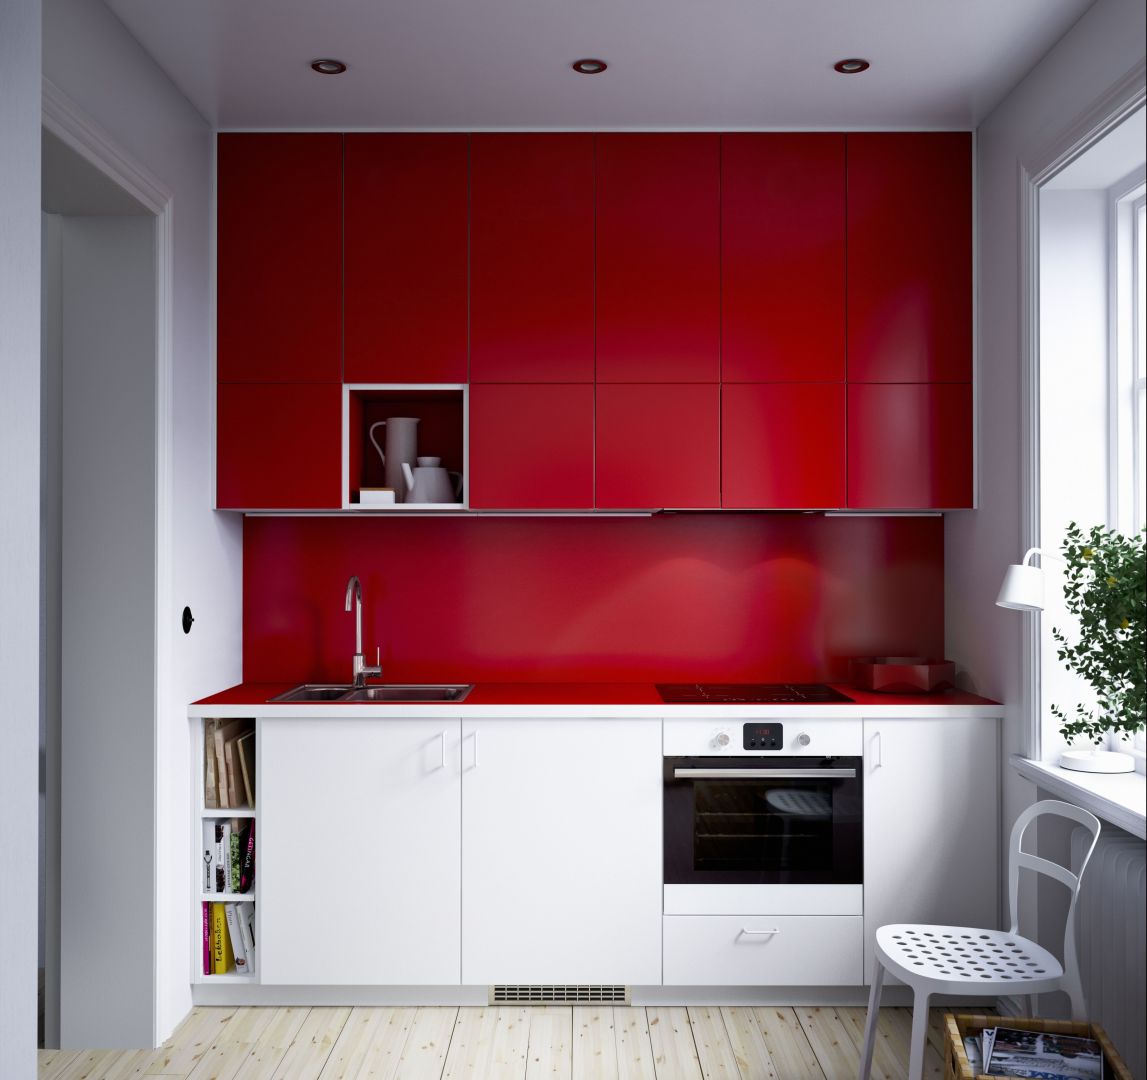 Nowoczesna, czerwono biała kuchnia Ikea
Fot. Ikea